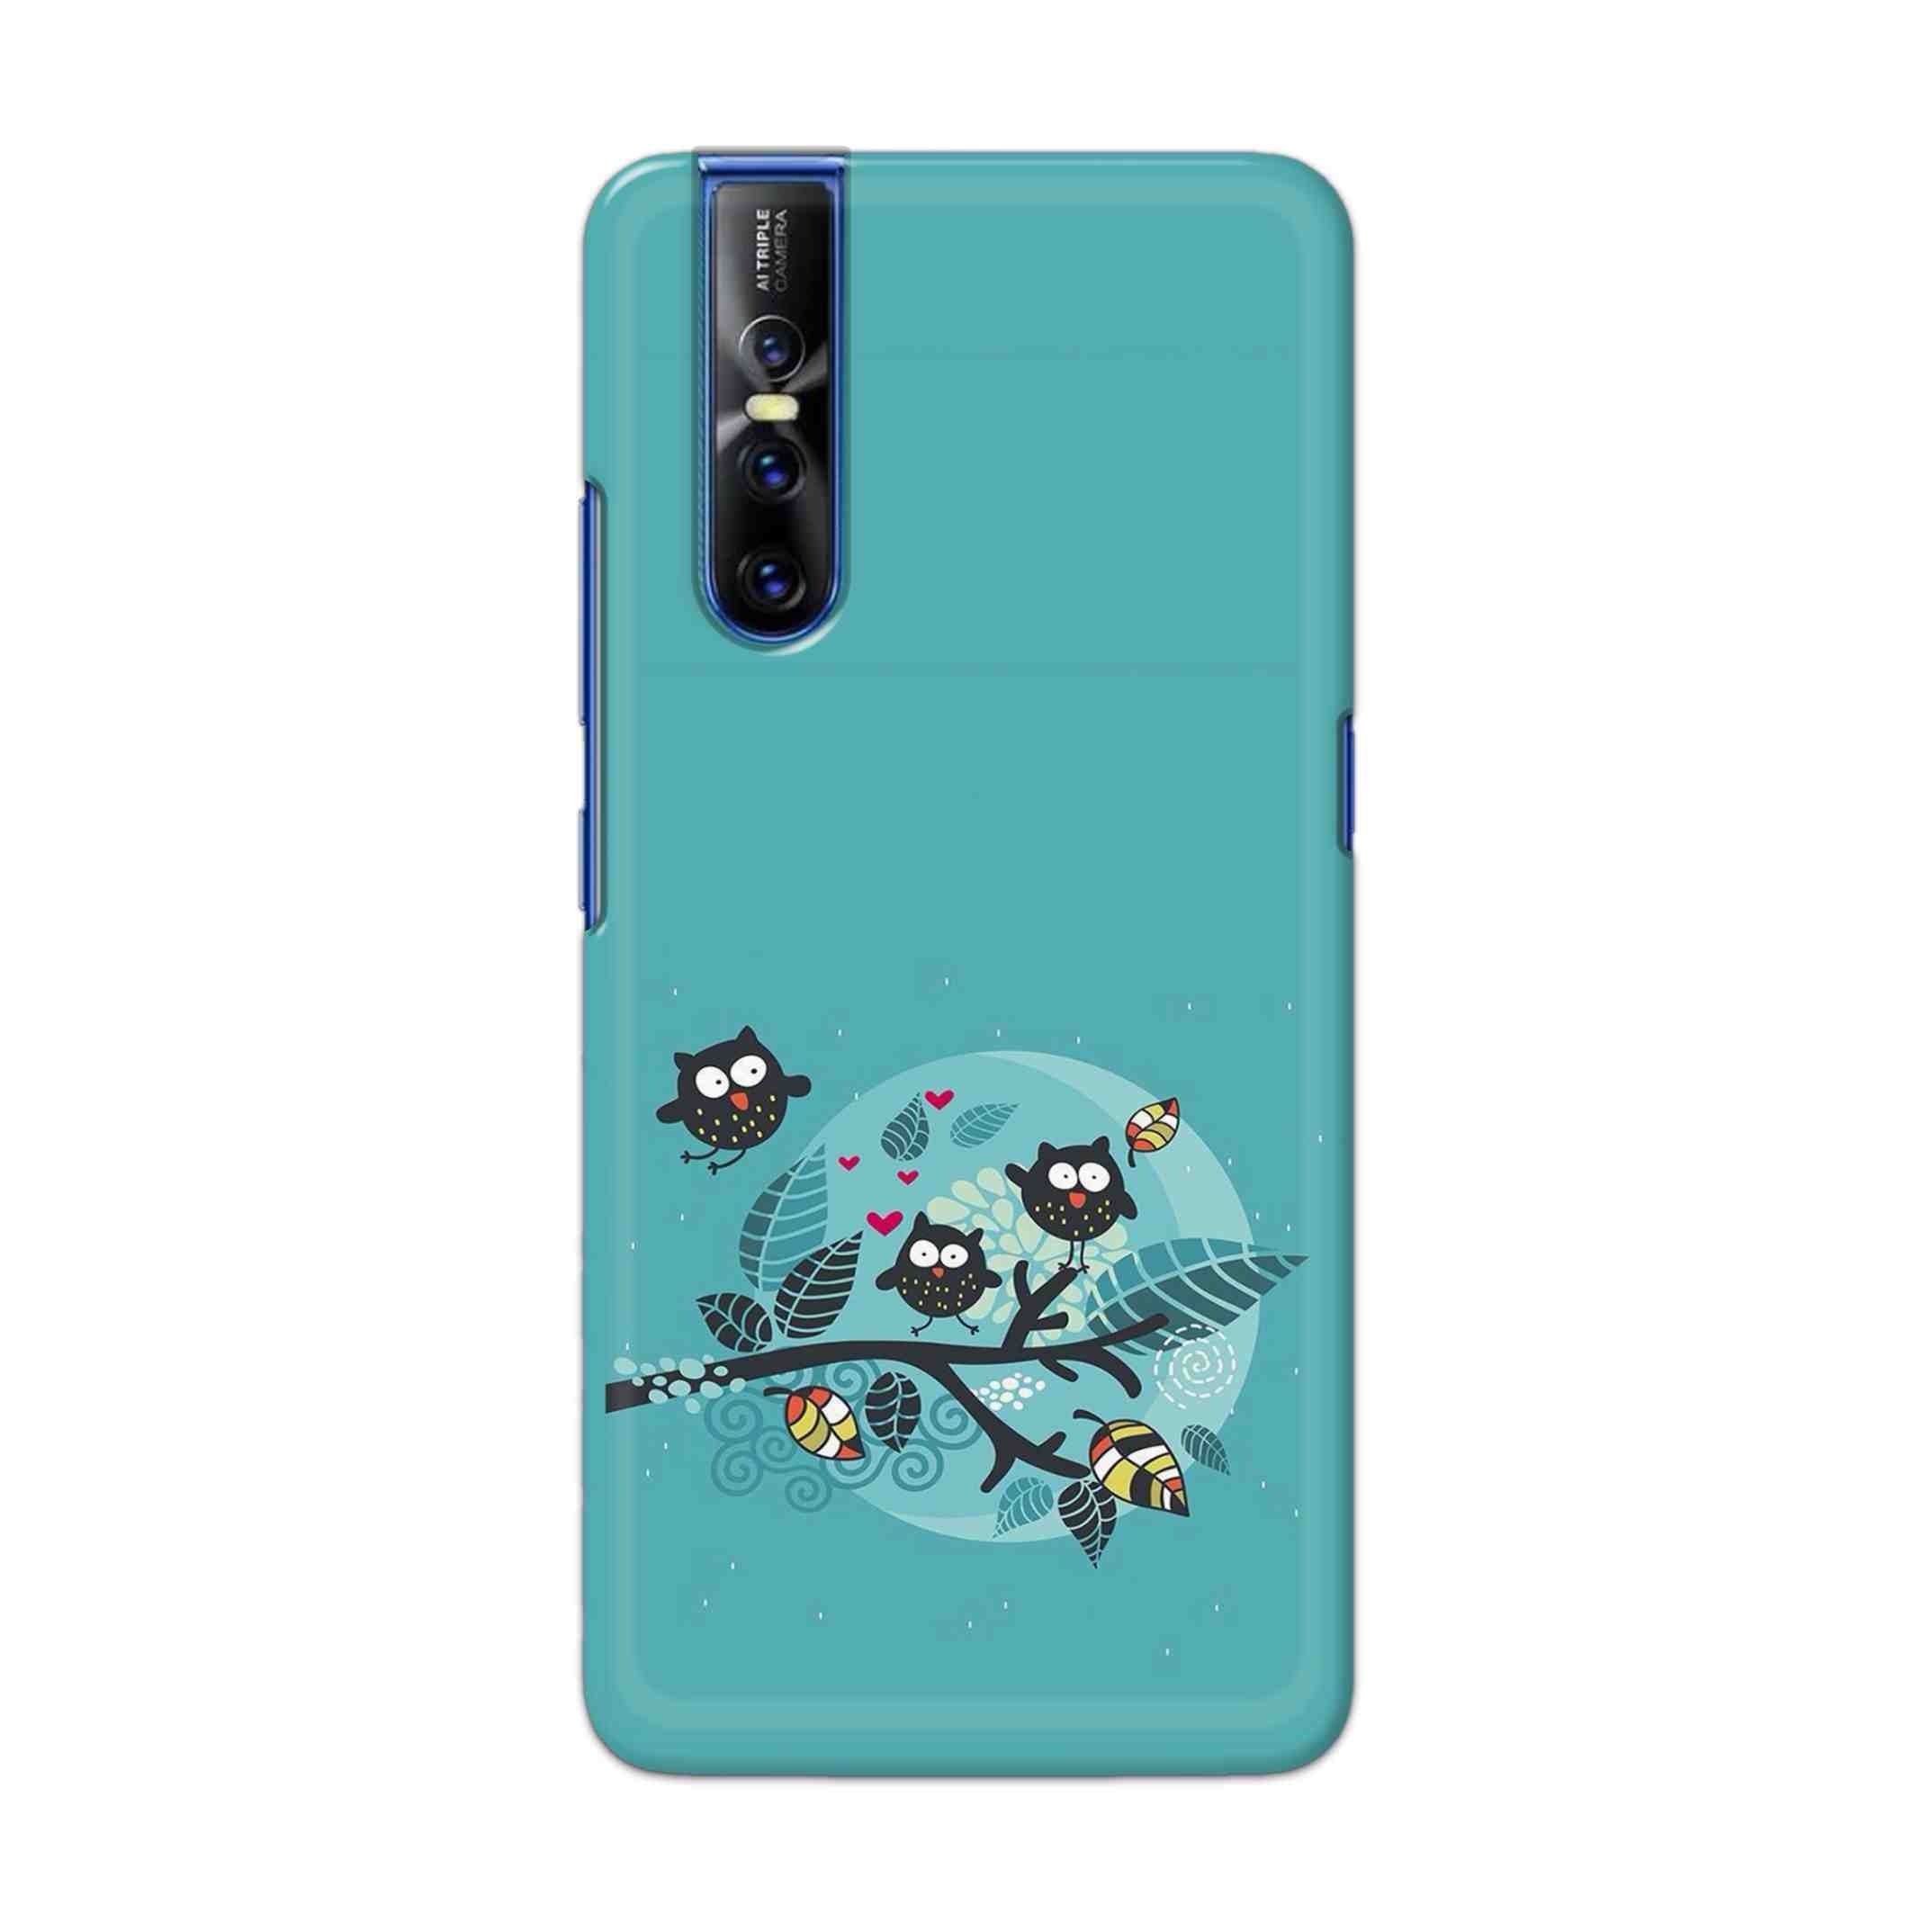 Buy Owl Hard Back Mobile Phone Case Cover For Vivo V15 Pro Online